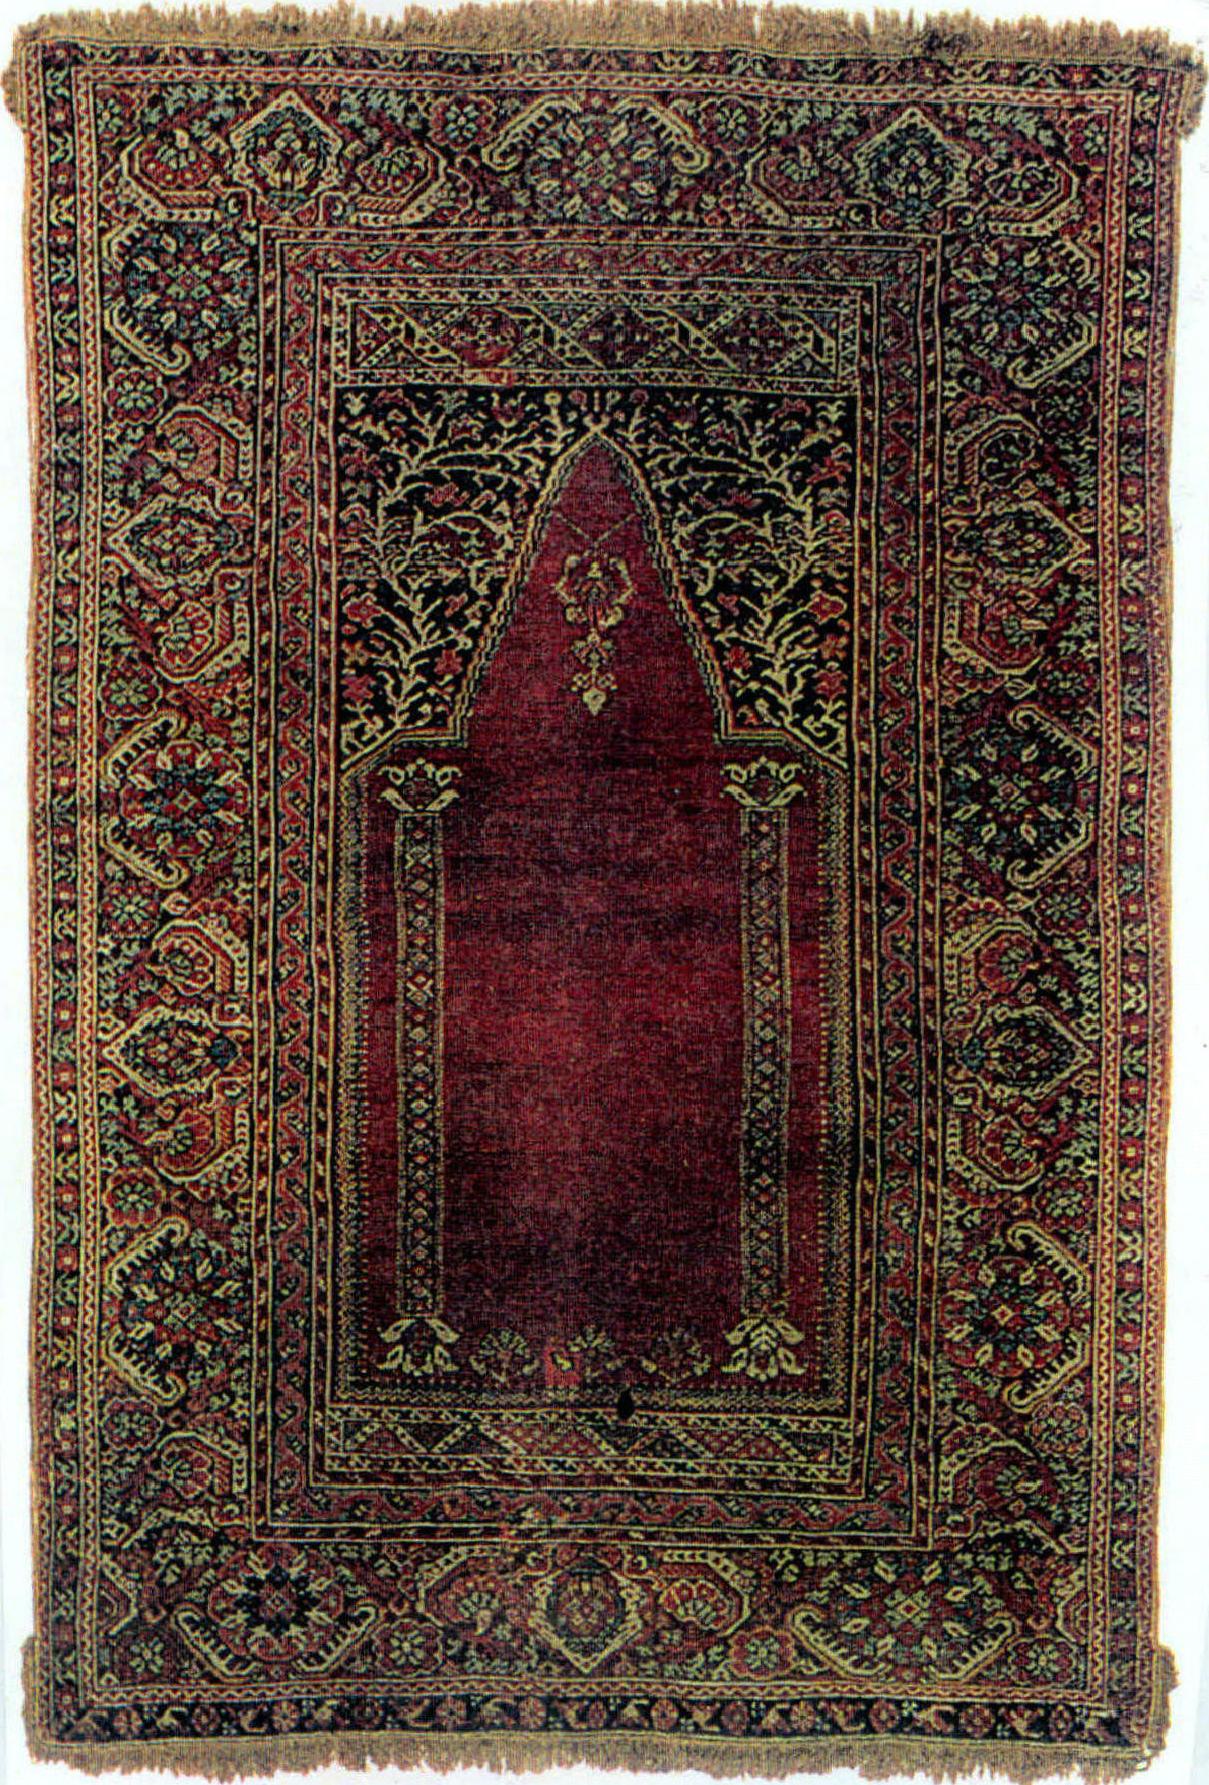 土耳其西部流行的地毯